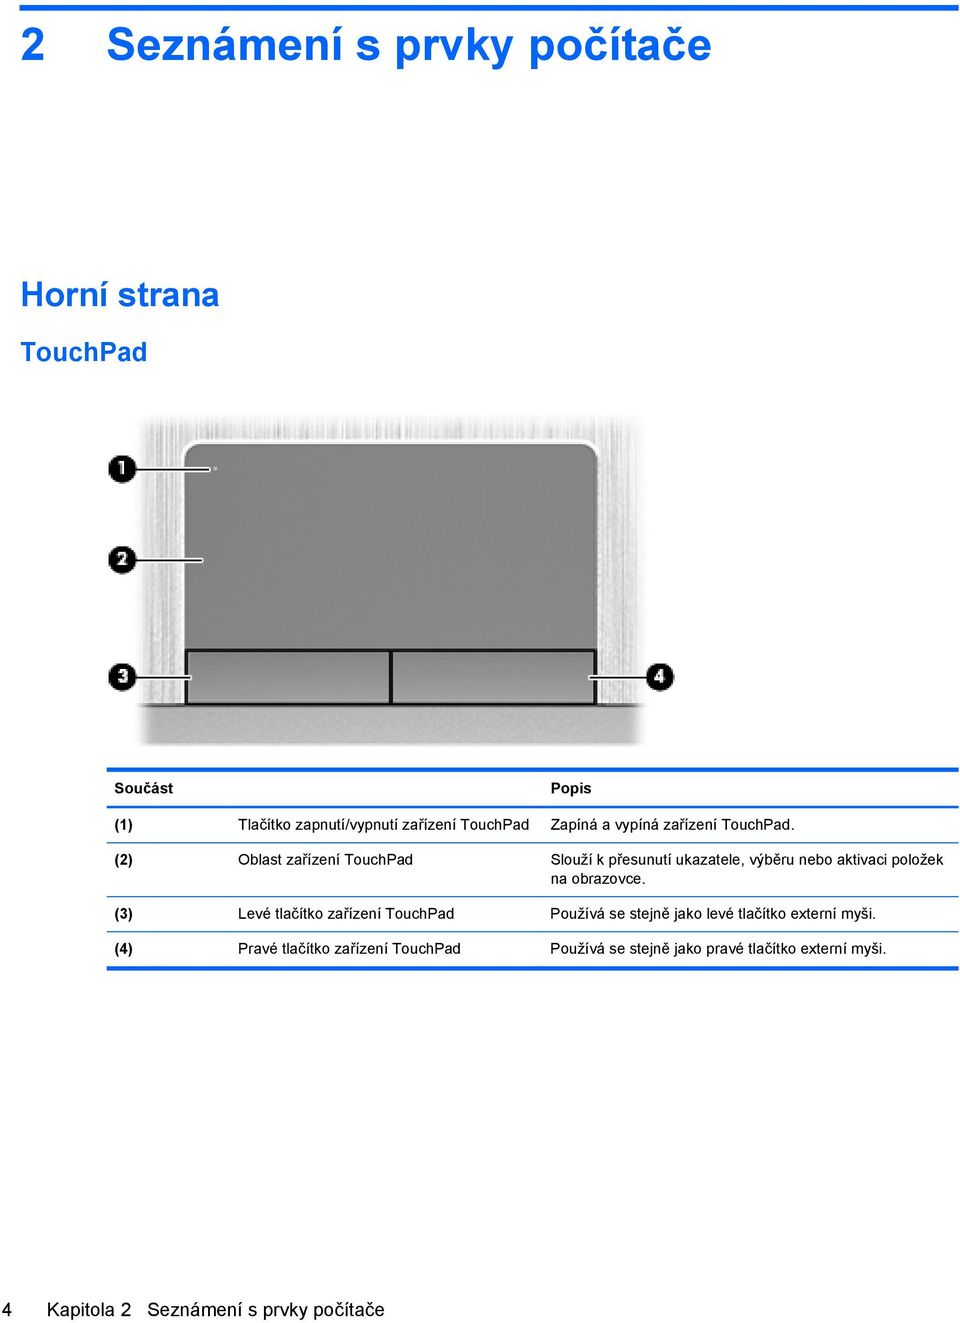 (2) Oblast zařízení TouchPad Slouží k přesunutí ukazatele, výběru nebo aktivaci položek na obrazovce.